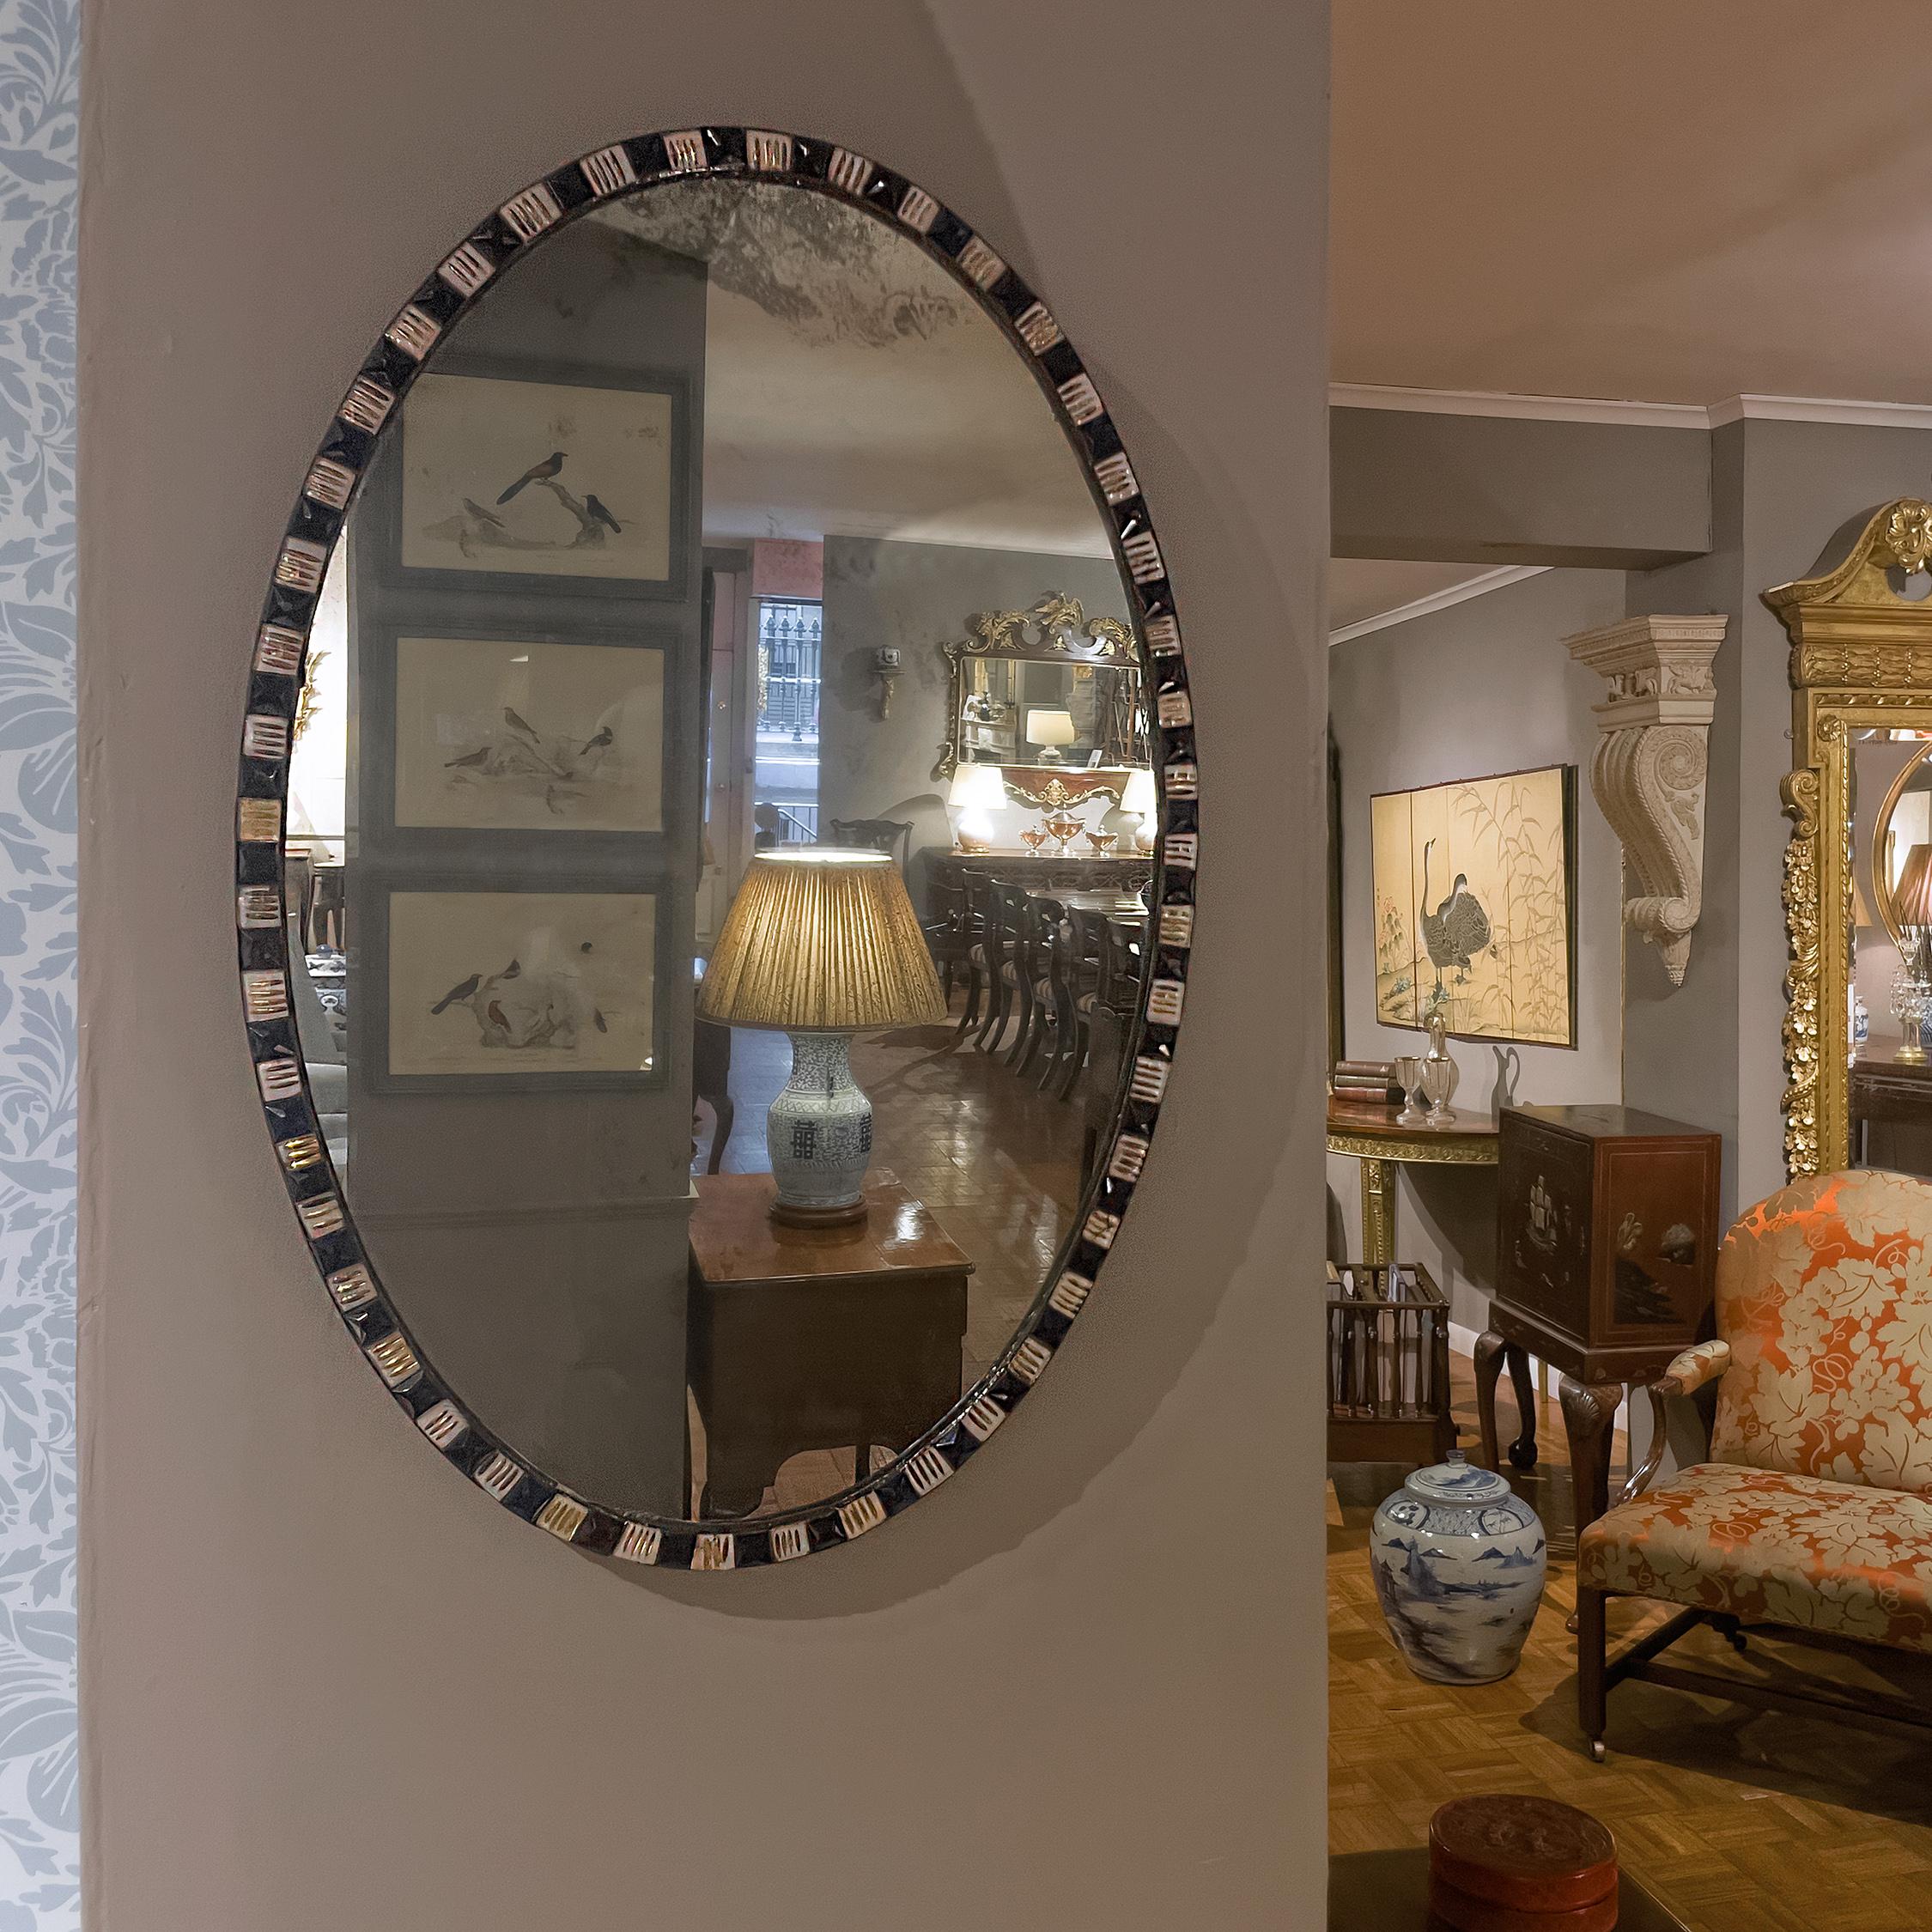 Dieser irische George-III-Spiegel besteht aus einer ovalen Spiegelplatte, die von abwechselnd blauen und klaren geschliffenen Glassteinen (mit aufgesetzter Vergoldung) umgeben ist und in einen Metallrahmen eingefasst ist. Die Grafschaft Waterford